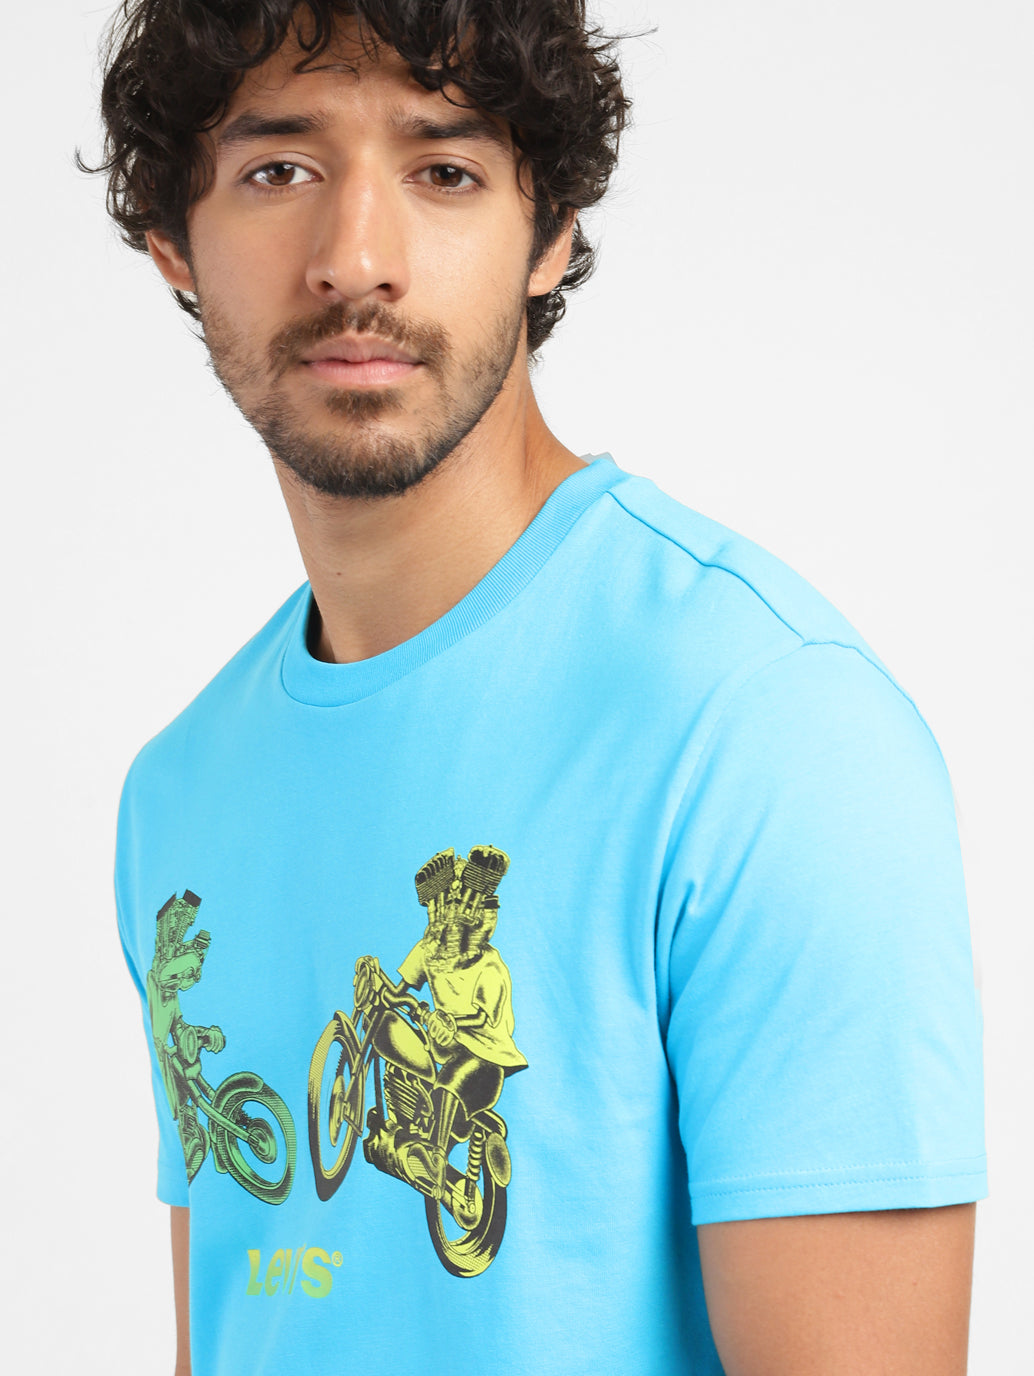 Men's Graphic Print Slim Fit T-shirt Blue